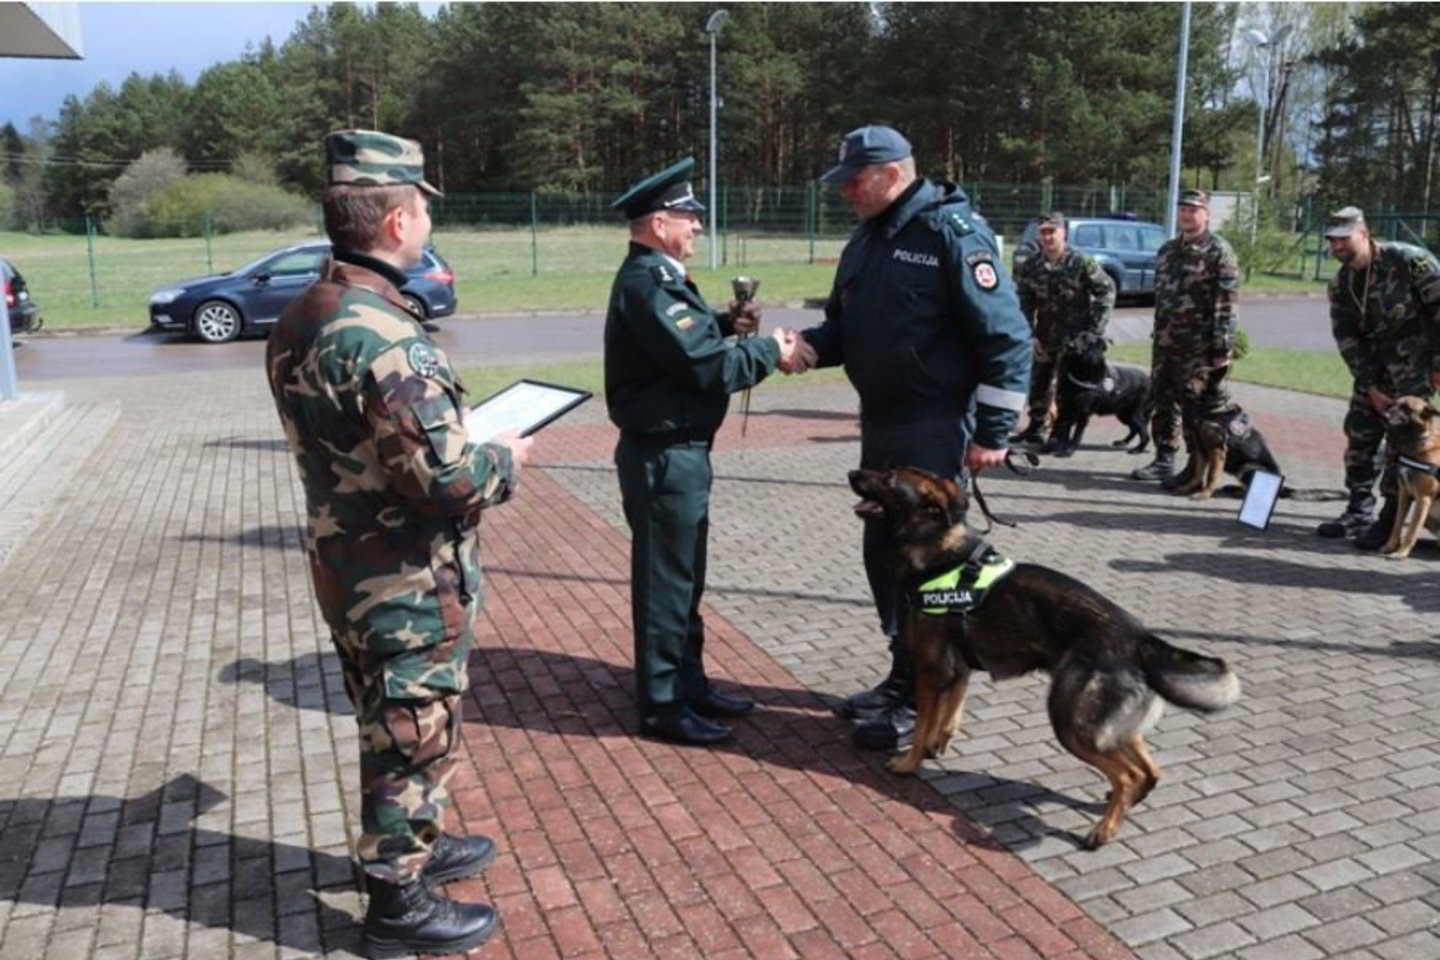  Dabar Klaipėdos policijoje tarnaujantis kinologas ir jo šuo bendroje įskaitoje surinko 375 taškus ir pasipuošė aukso medaliais.<br> VSAT nuotr.